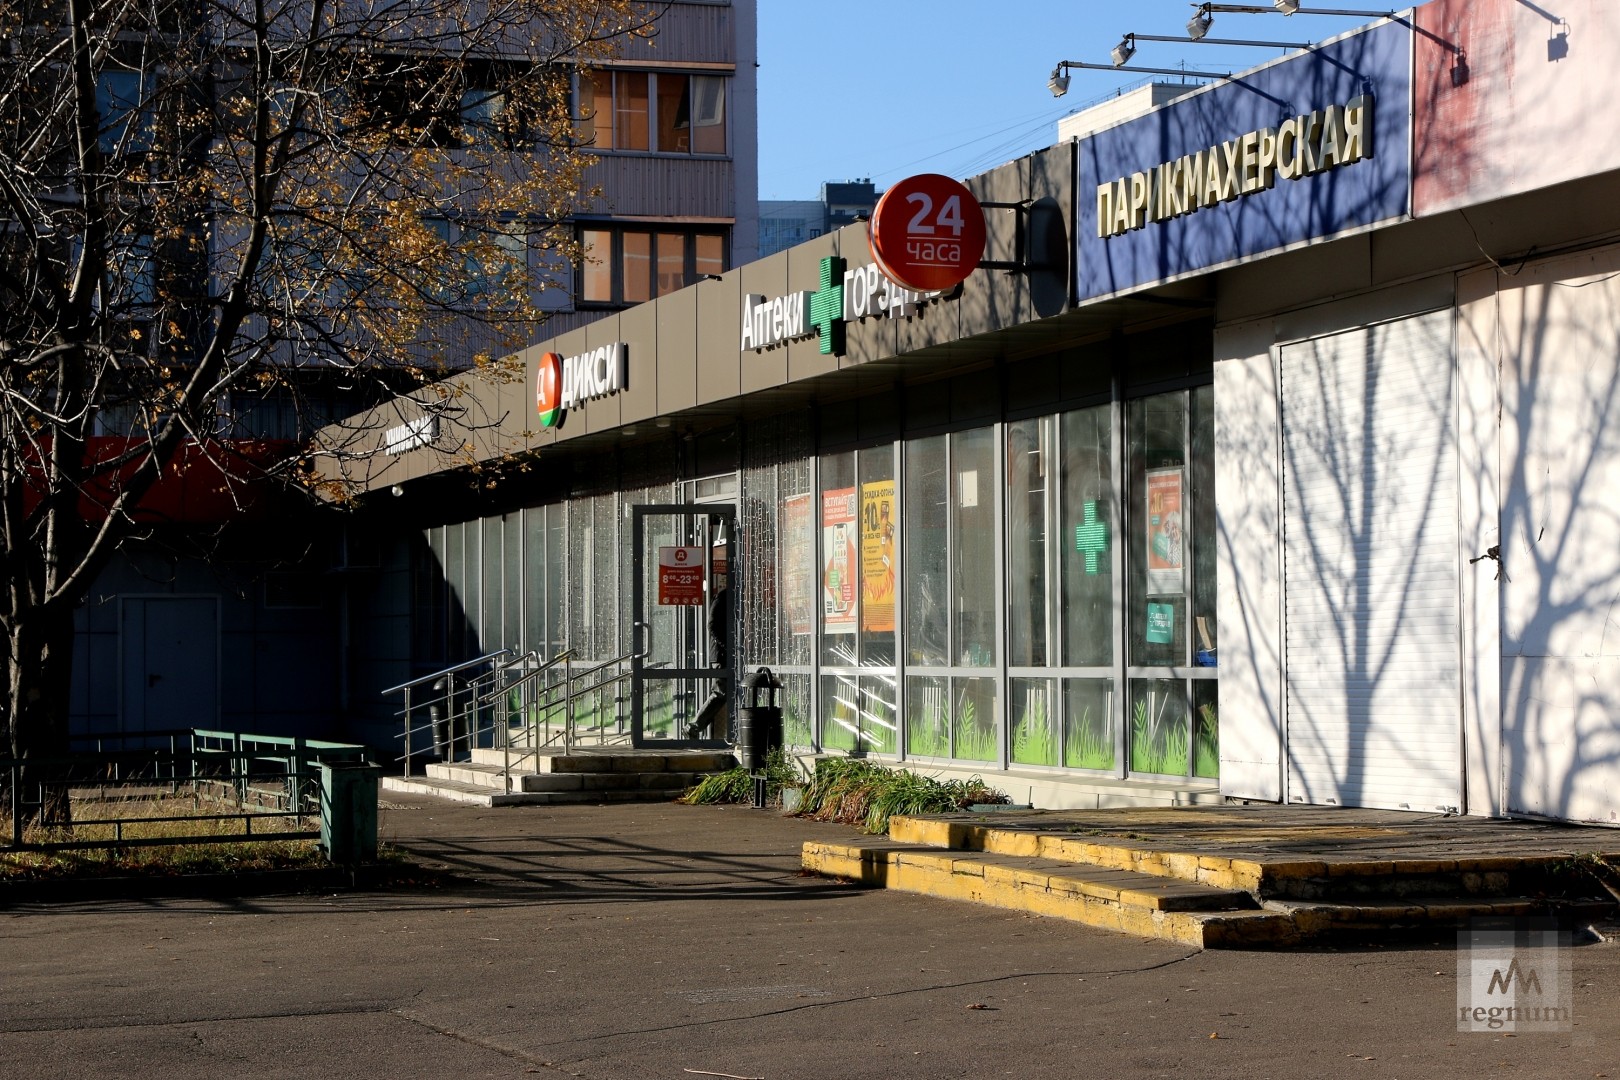 Ивановские Магазины В Москве